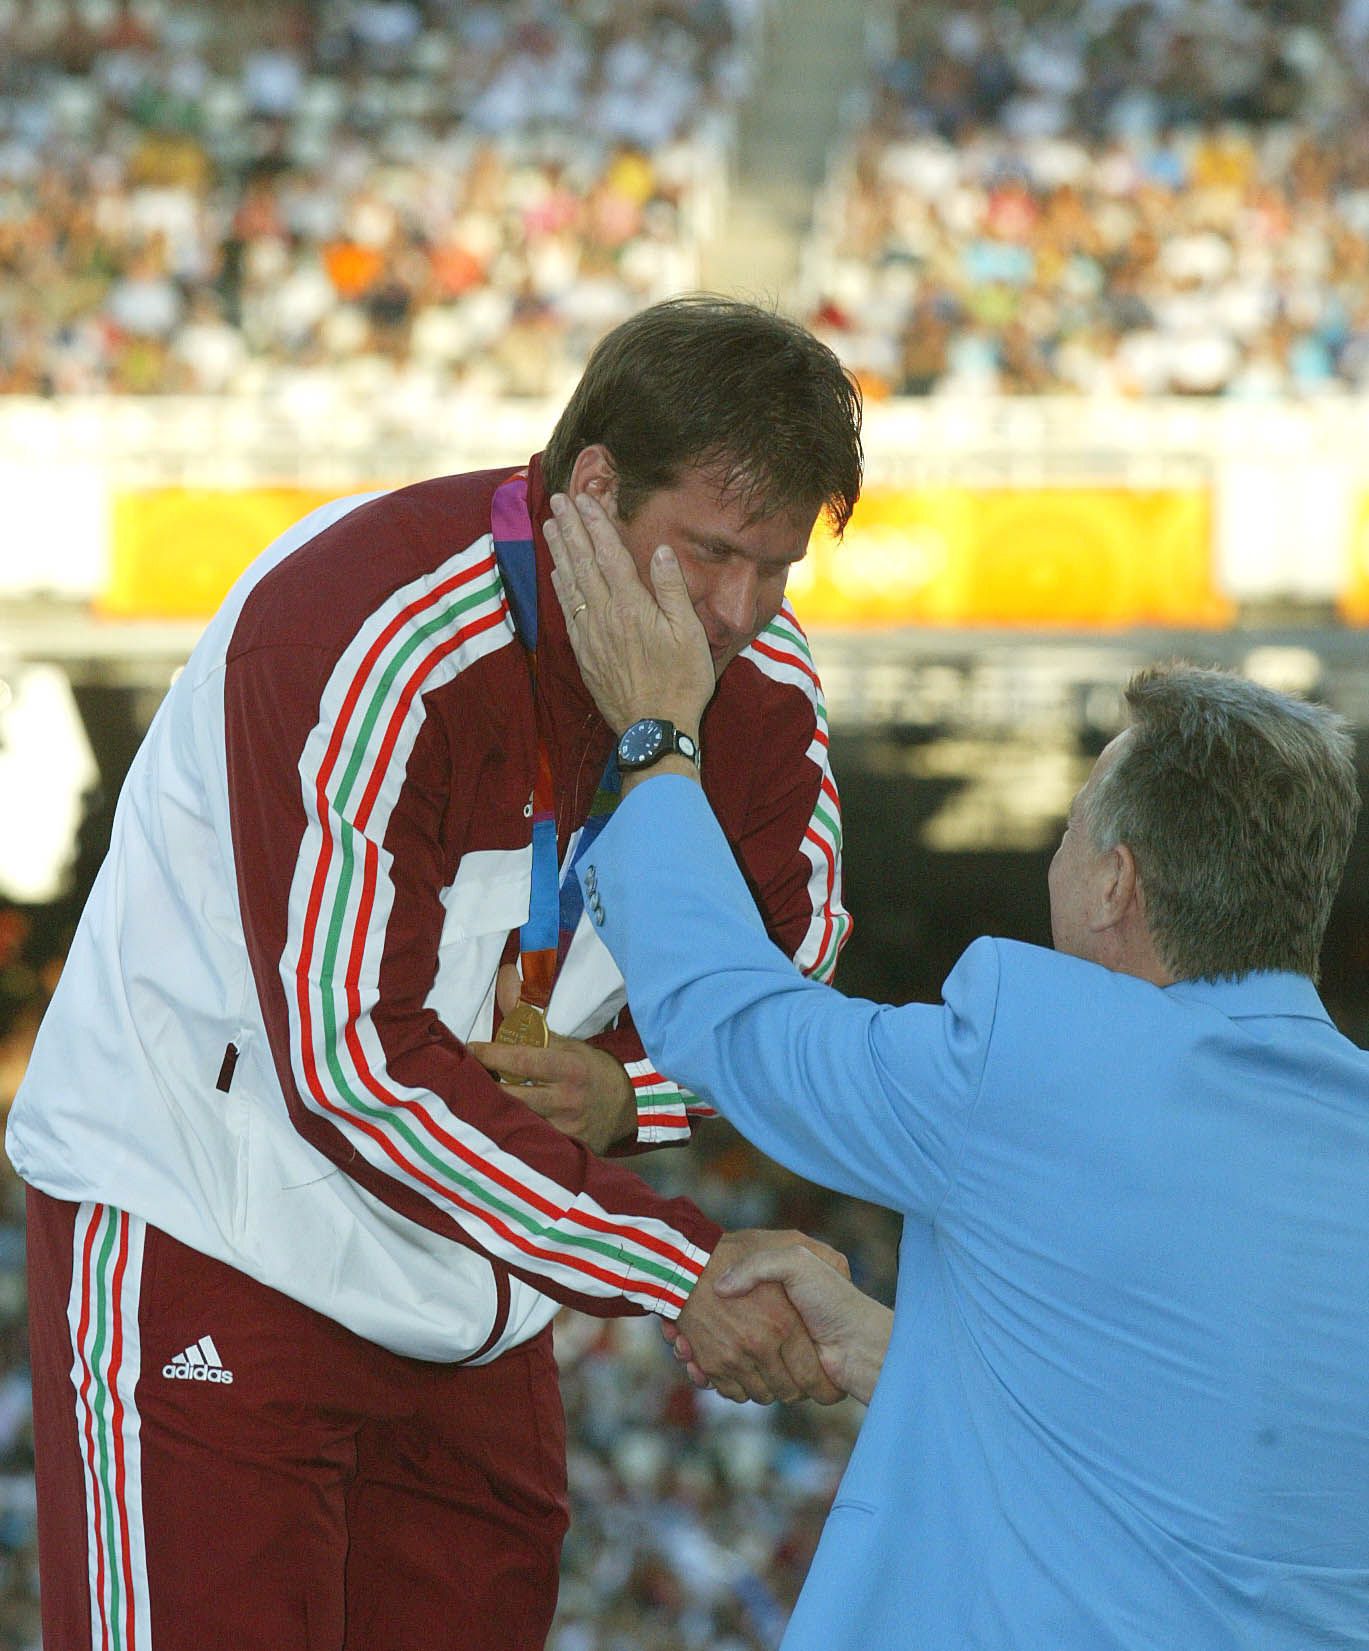 Annus Adriánnal a 2004-es olimpián a kalapácsvetés eredményhirdetésénél. Nem gondolta volna, hamarosan micsoda keserű pirulát kell lenyelnie... (Fotó: MTI/Bruzák Noémi)